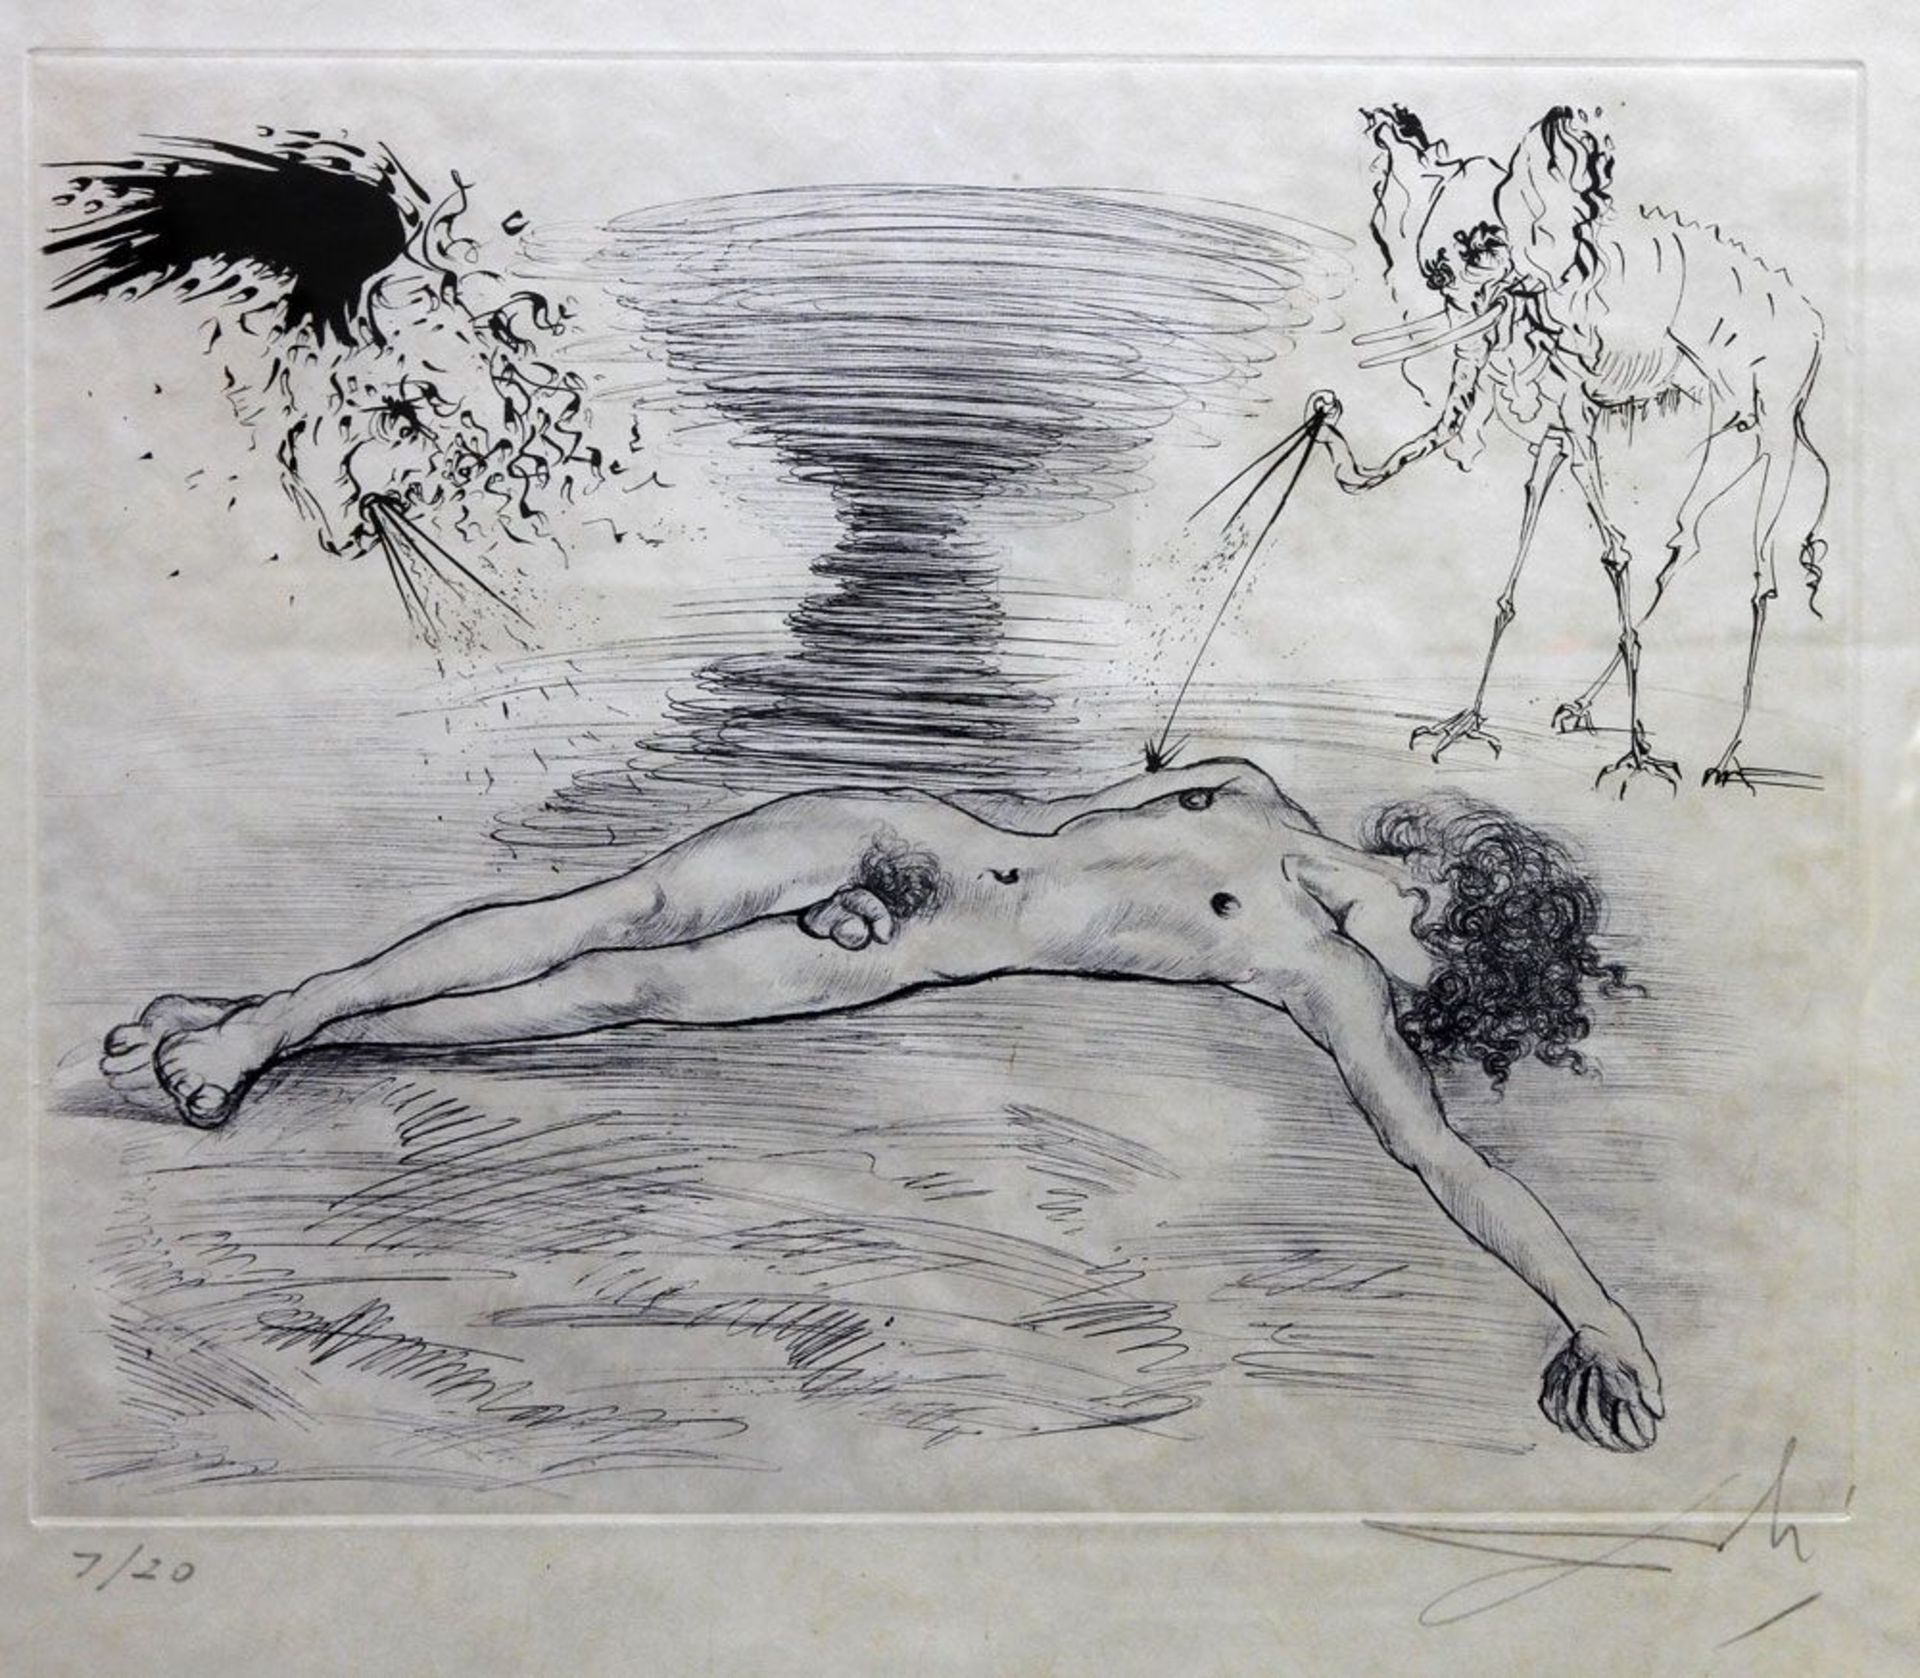 DALI, SALVADOR (1904-1989): "HYPNOS" aus "Mythologie", 1963/65. Farbradierung auf Velin, unten links